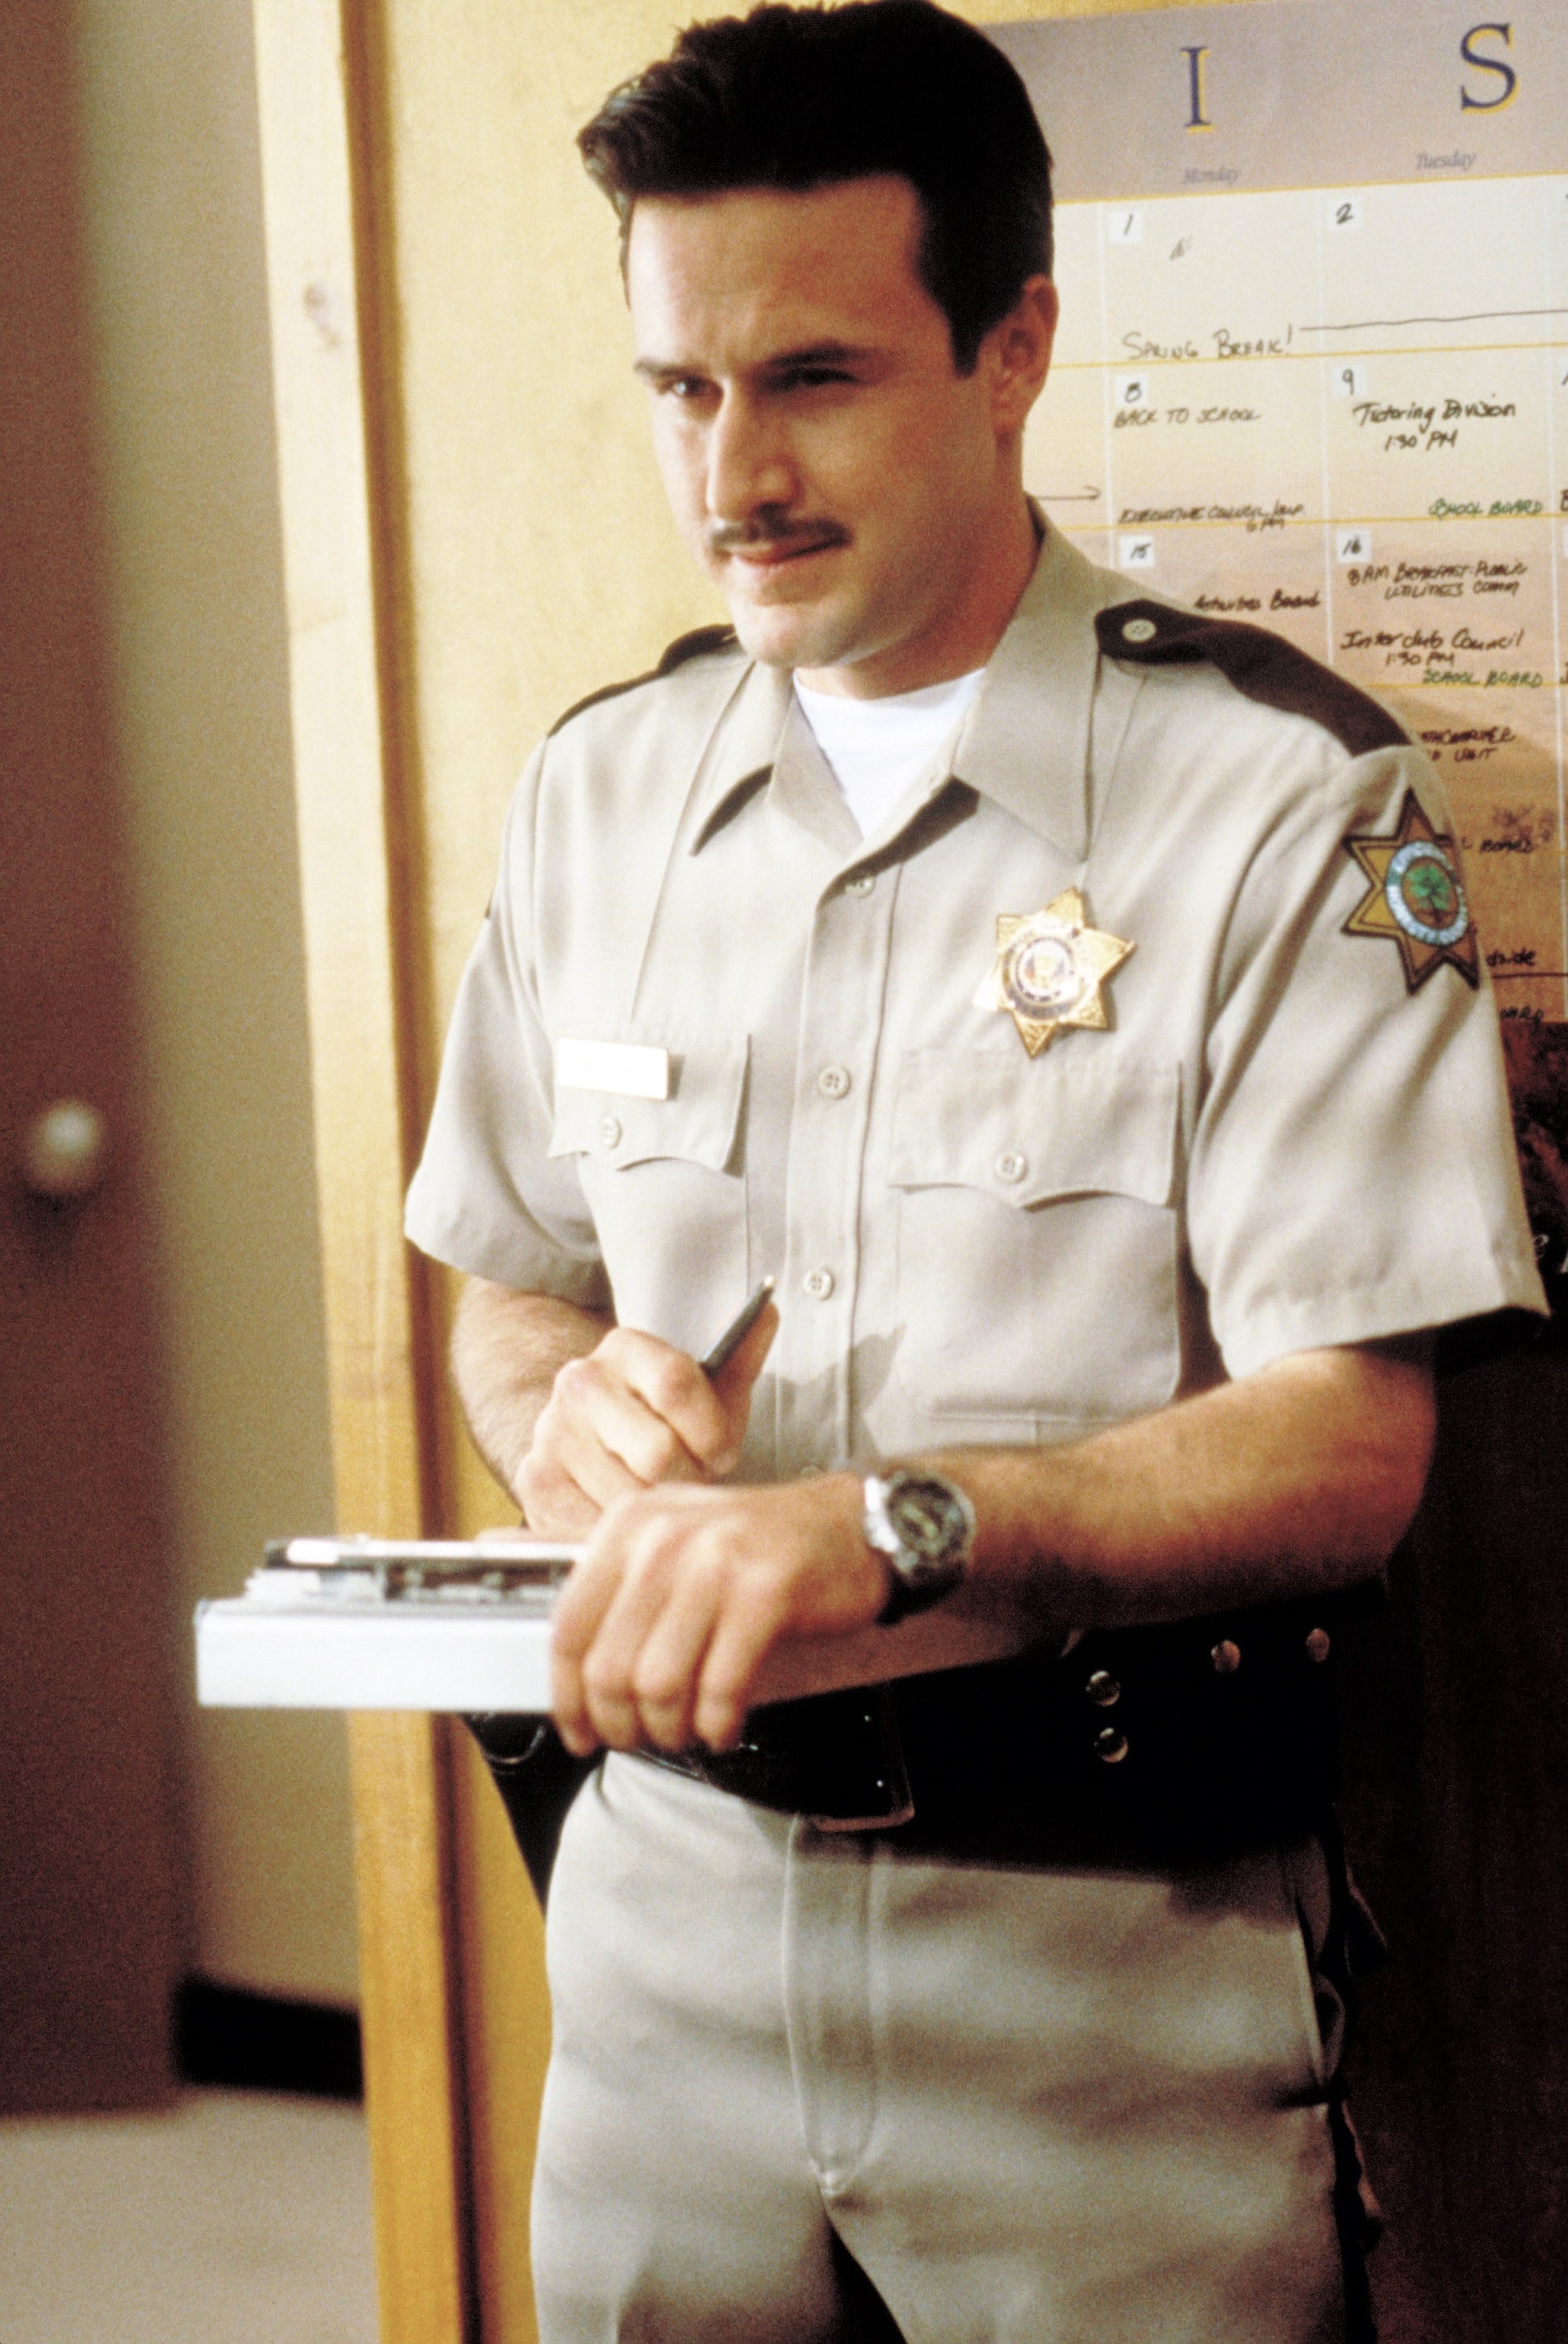 david in the police uniform